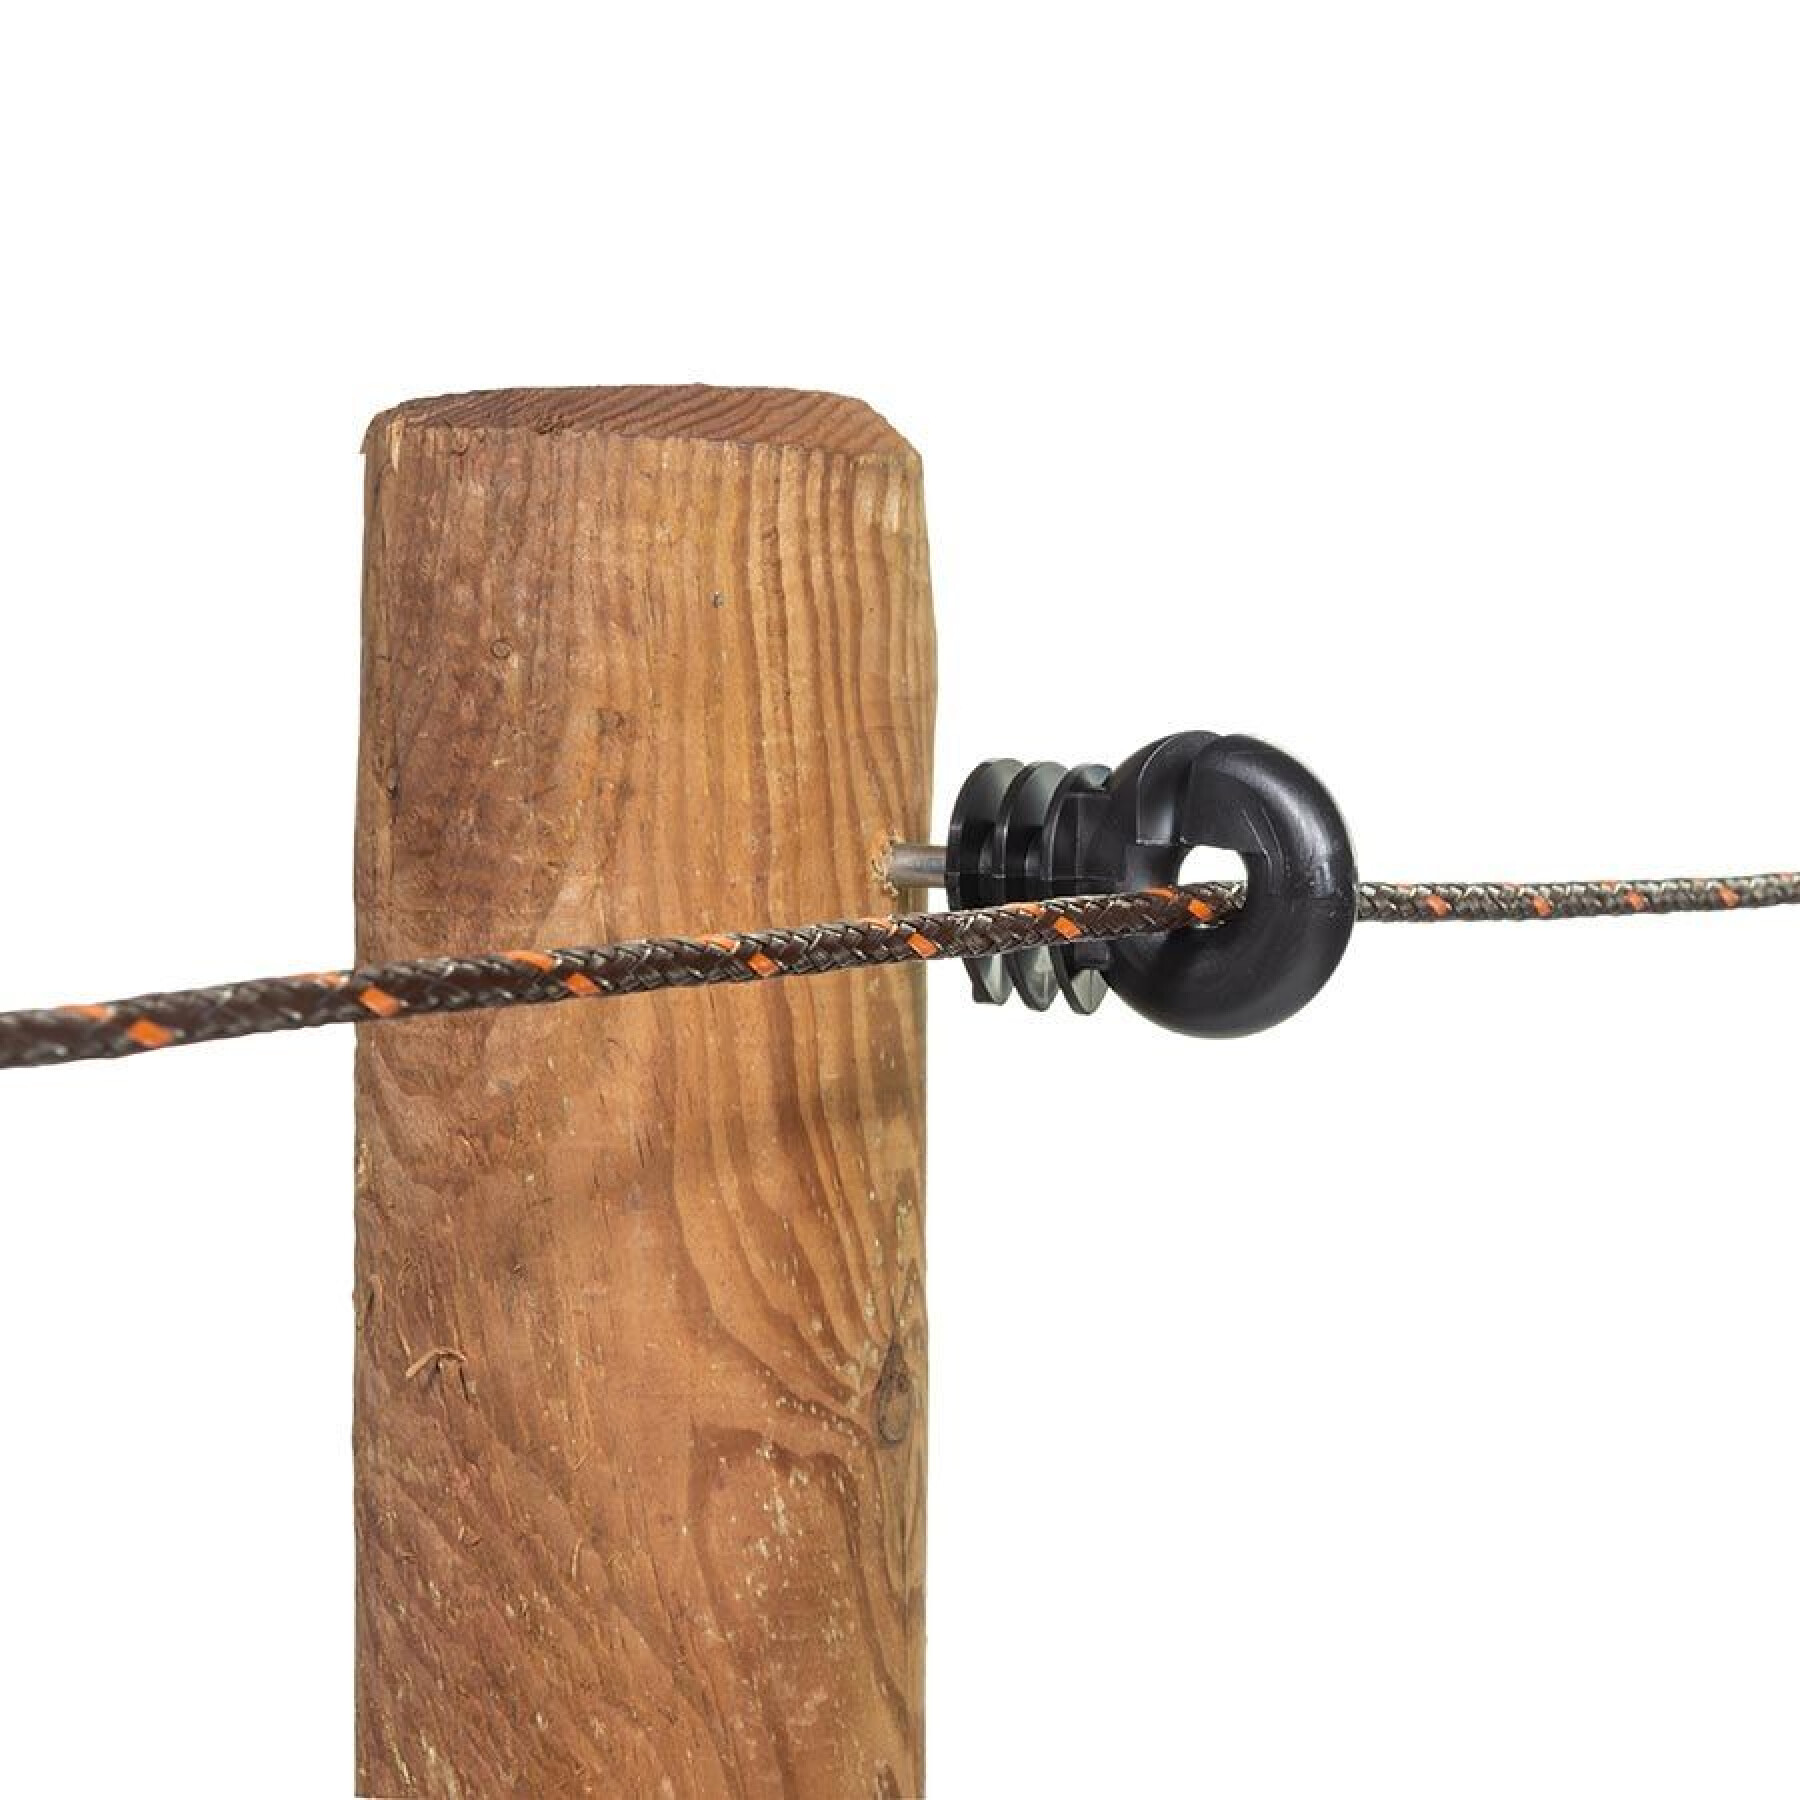 Aisladores para vallas eléctricas de tornillo bs wood Gallagher (x125)